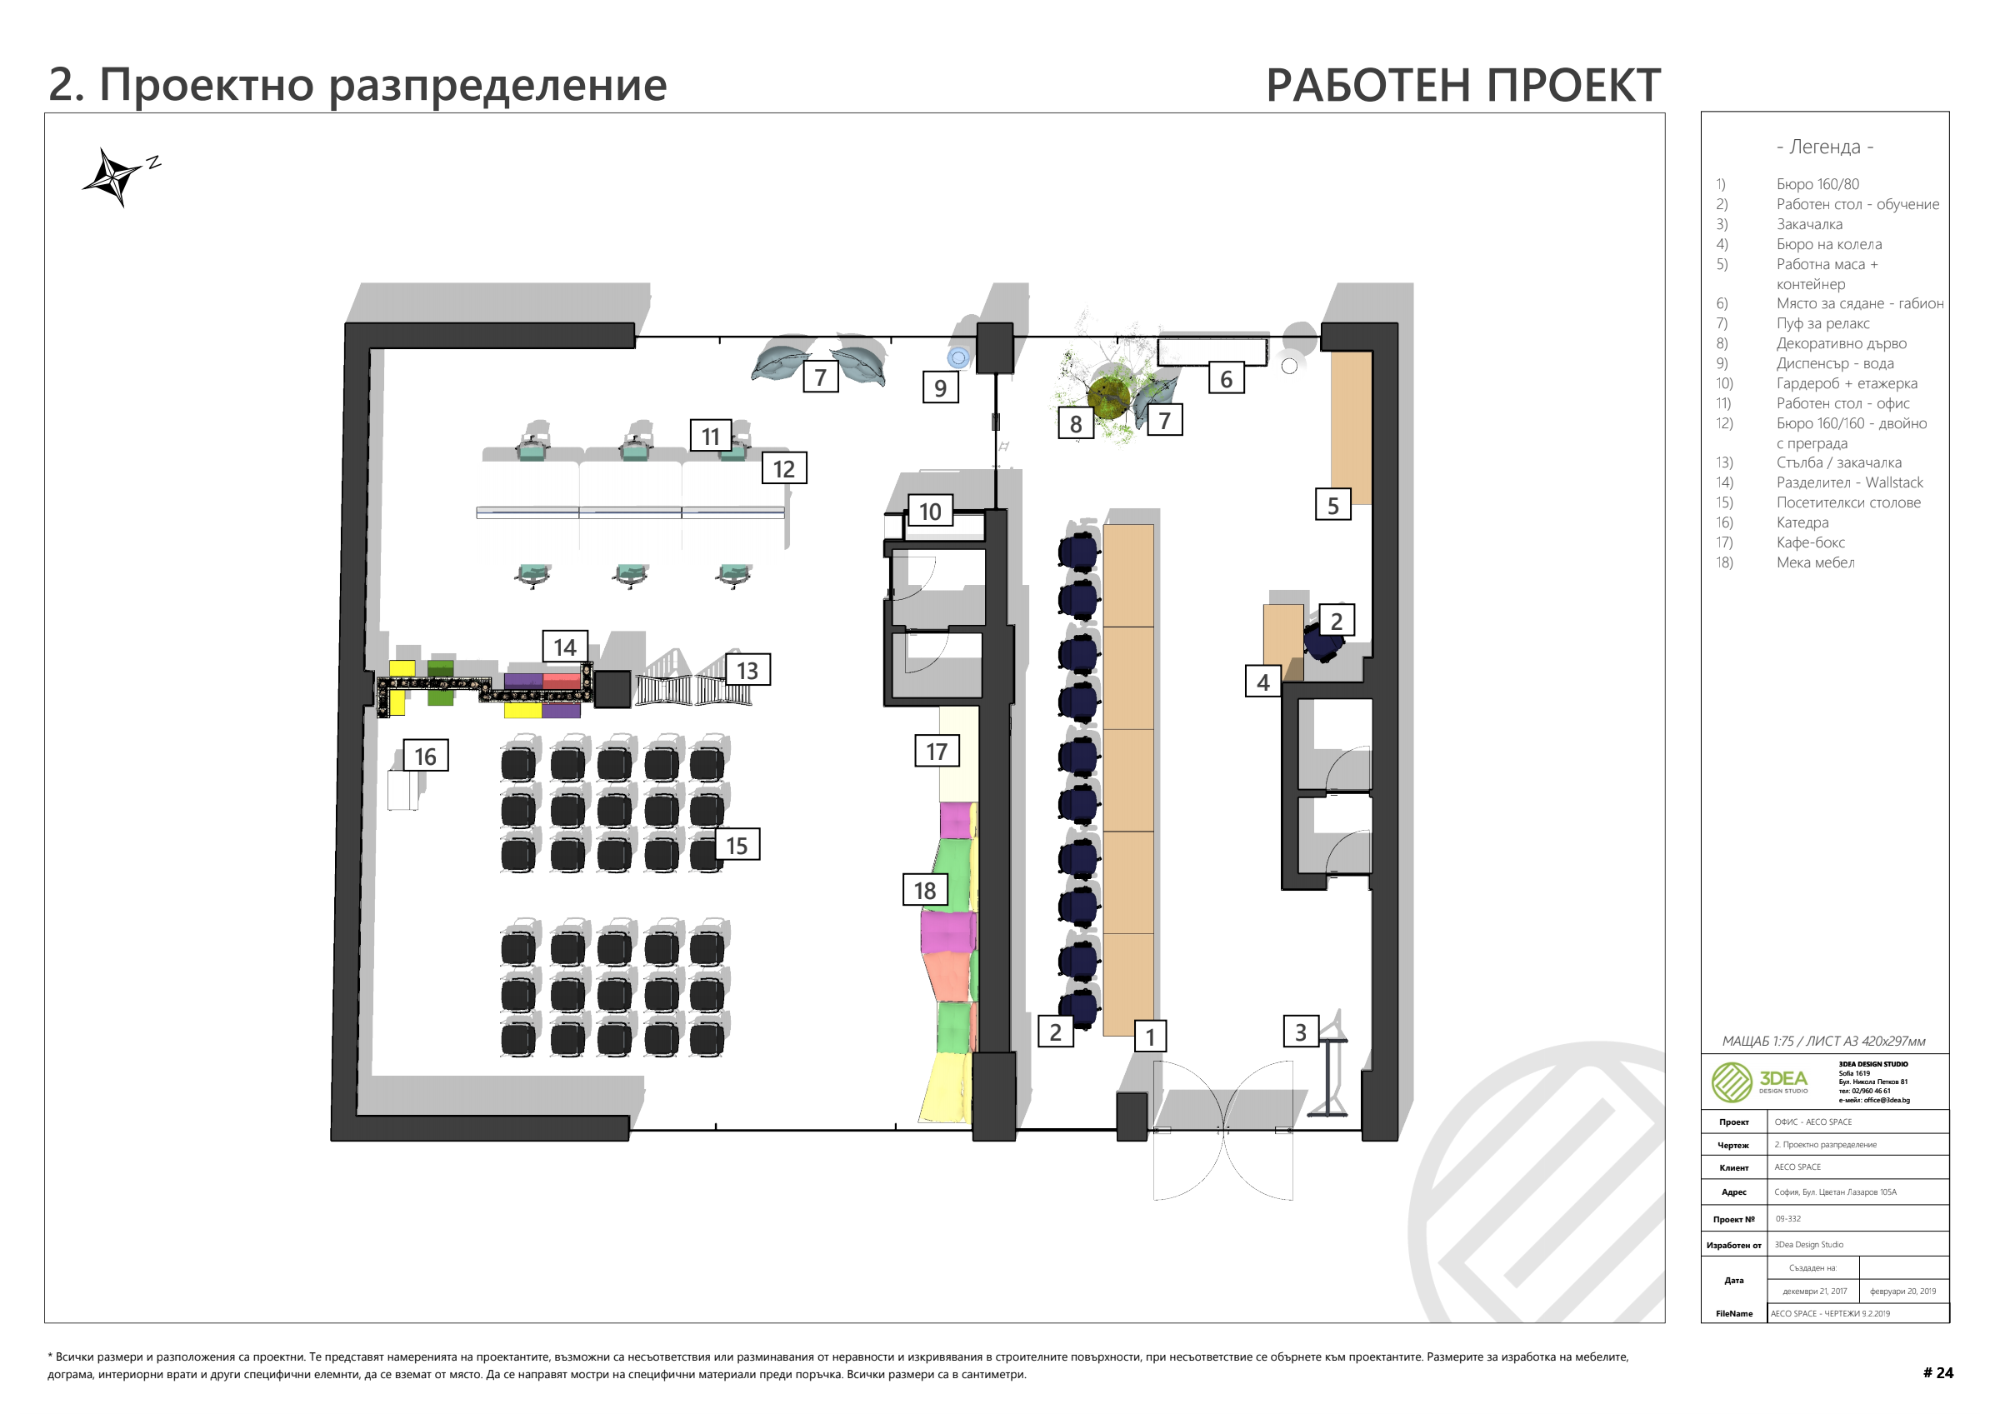 Изглед на етажен план с бележки на проекта на AECO Space. Създаден с помощта на SketchUp и генериран в LayOut.